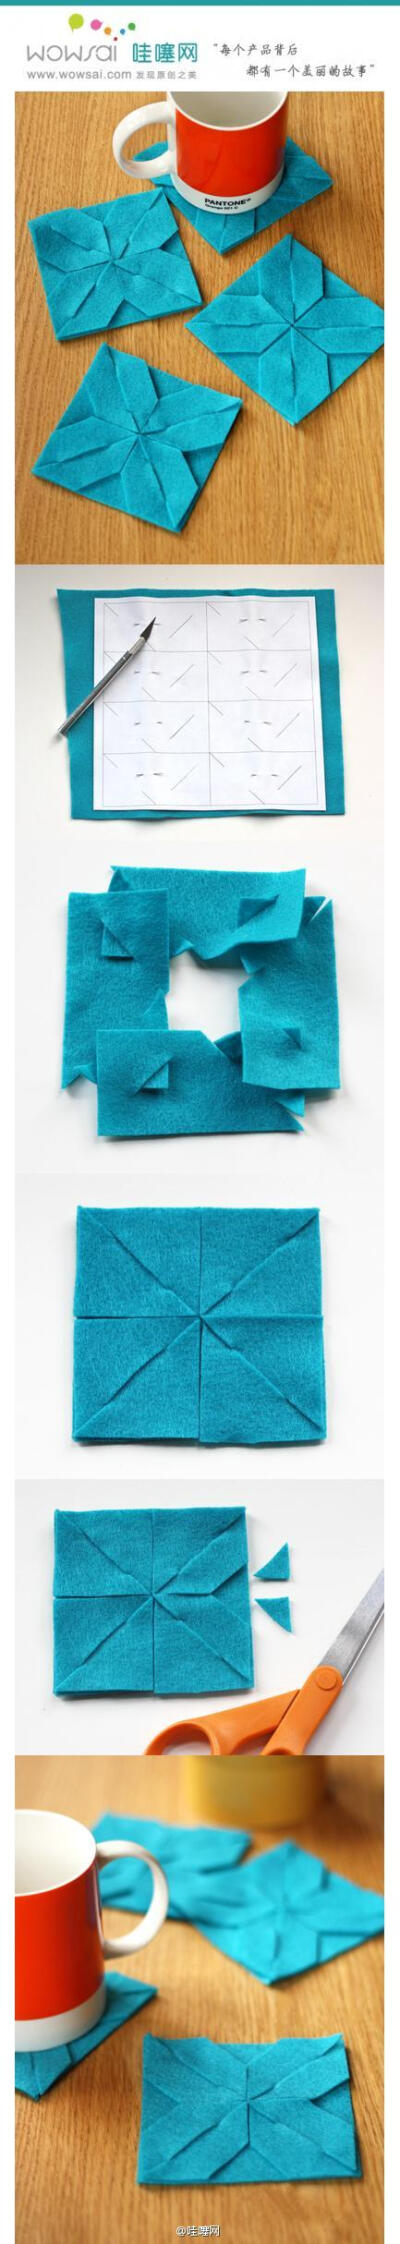 手工制作几何图形不织布杯垫 简单几个步骤,就可以用不织布制作一个